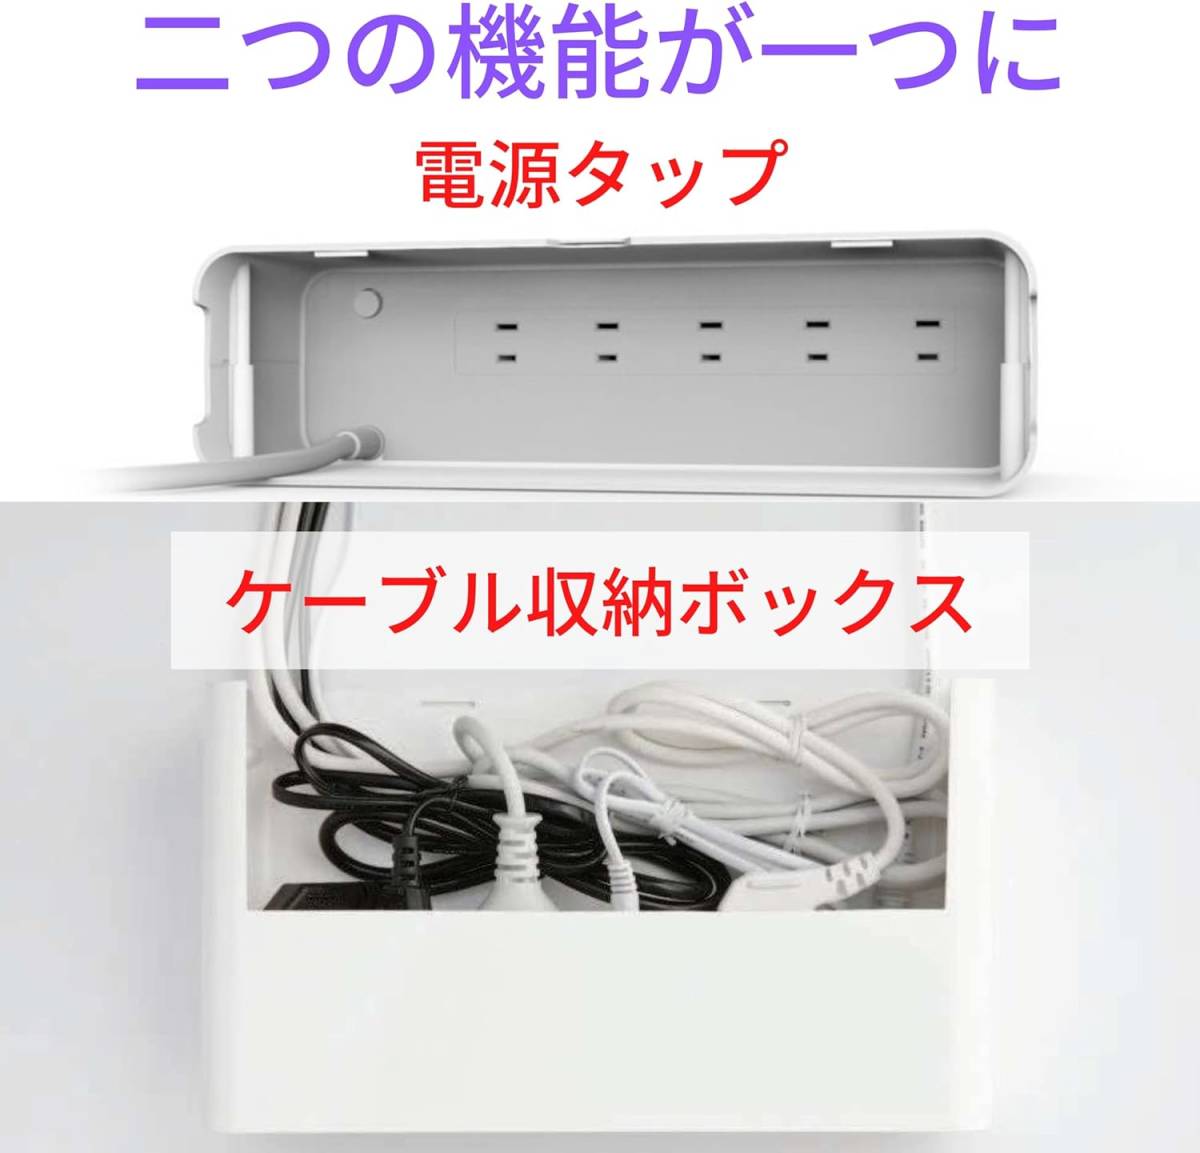 延長コード 近未来デザインボックス 電源タップ マルチタップ ケーブル収納 USBポート 個別スイッチ コンパクト スマート インテリア_画像6